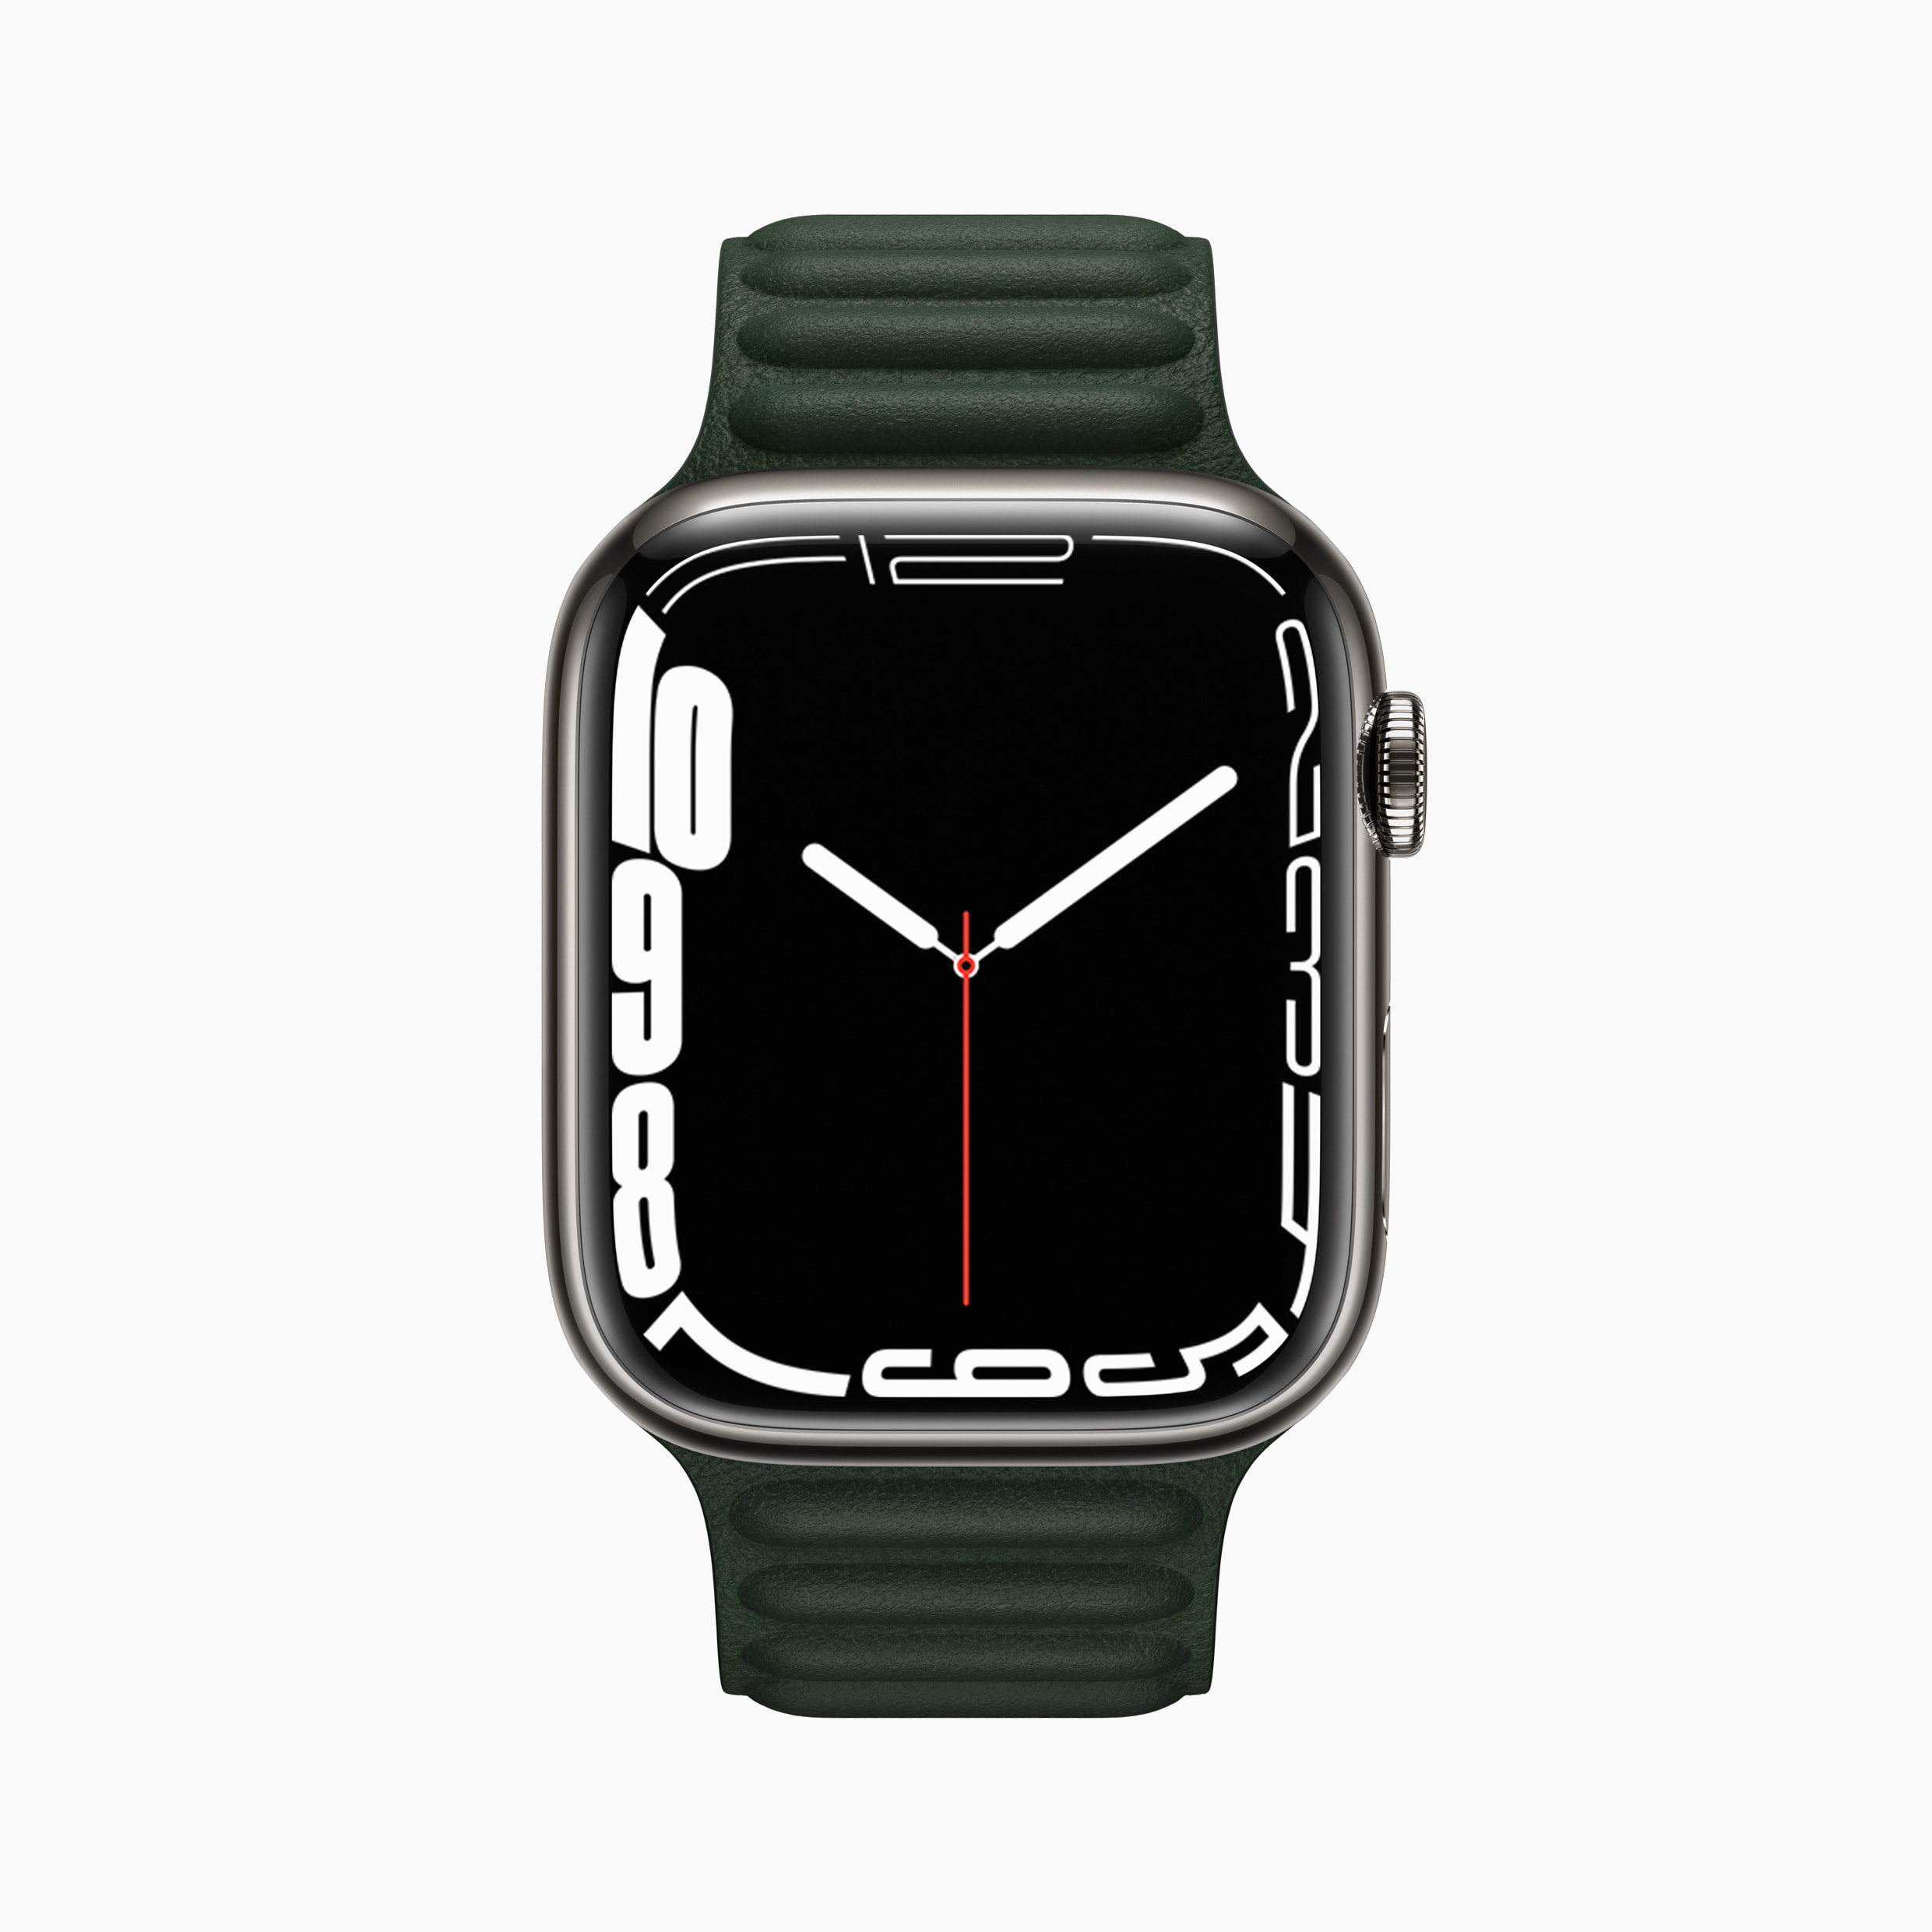 Apple 最も大きく最も先進的なディスプレイを搭載したapple Watch Series 7を発表 Apple 日本